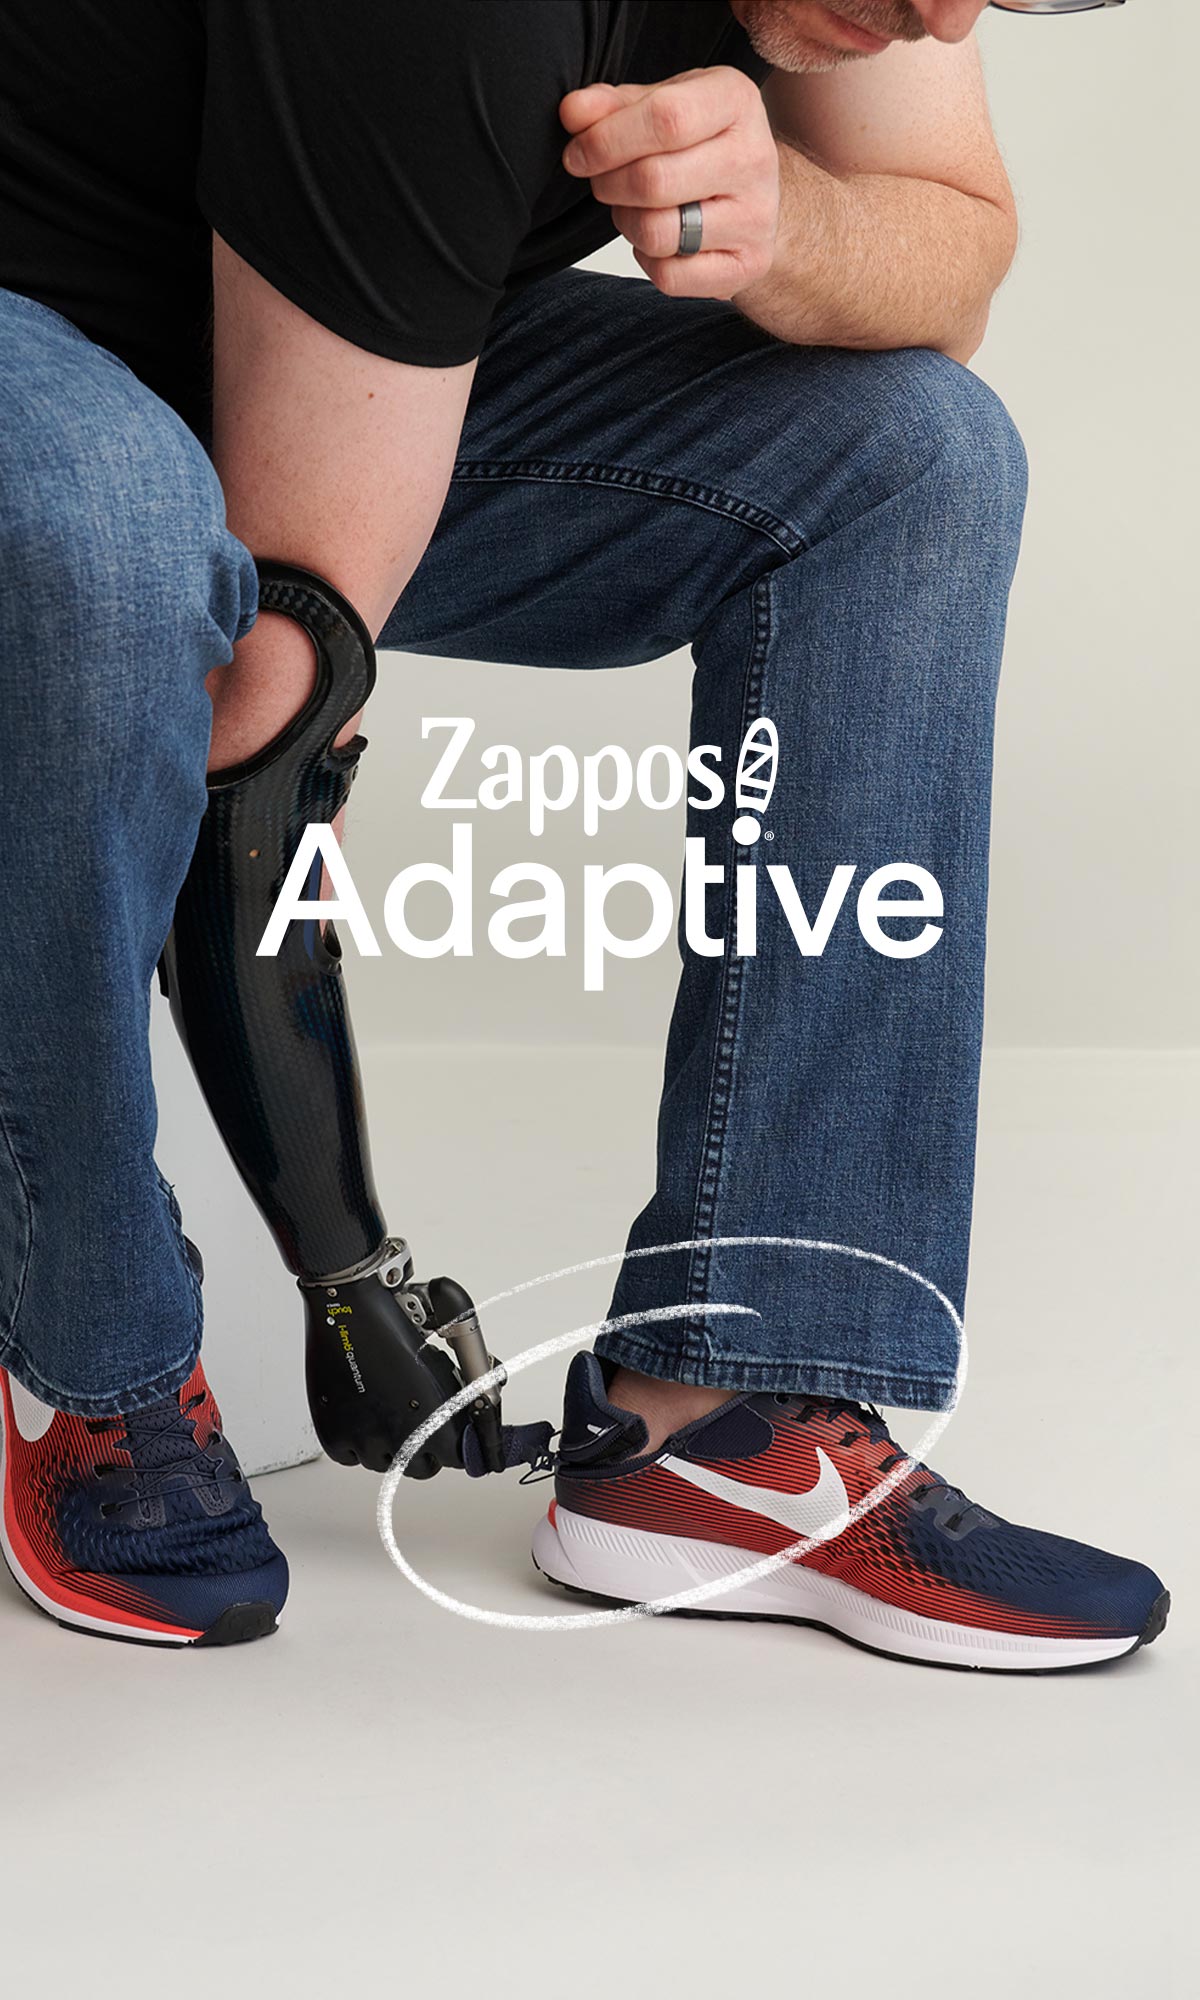 Zappos Adaptive shoe functionality